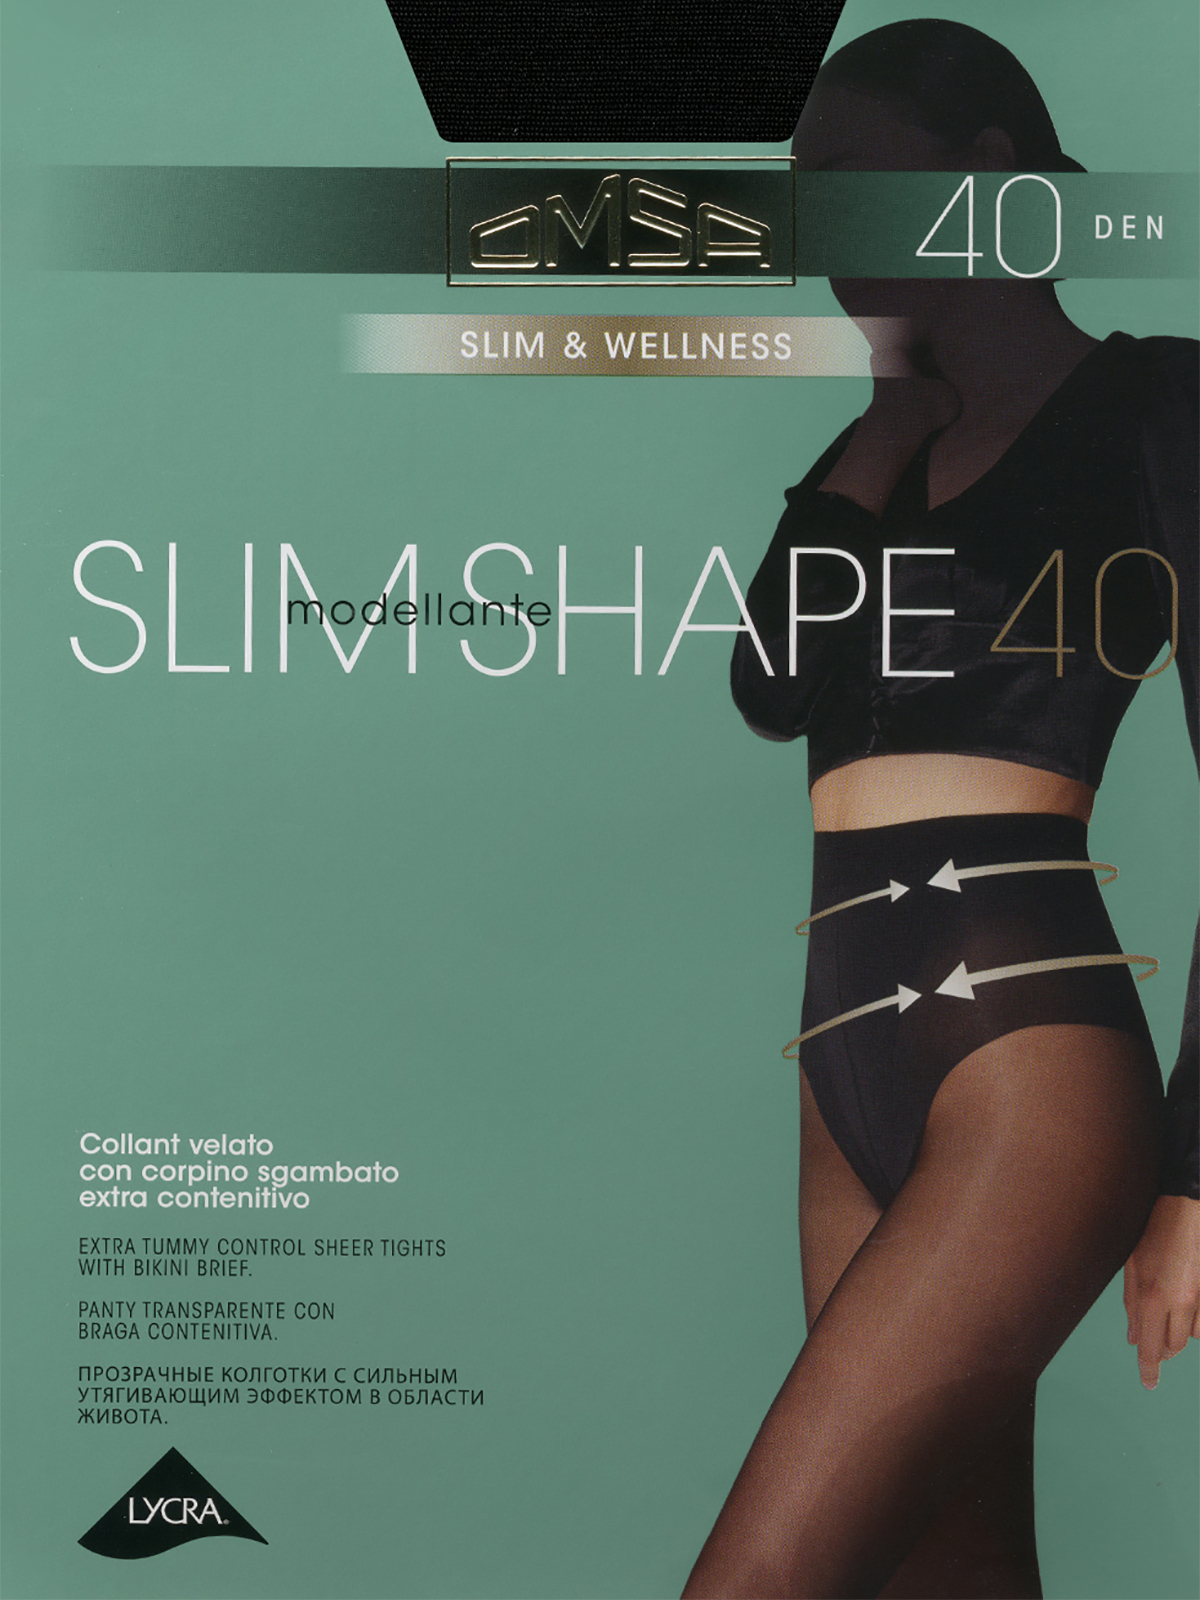 Omsa Slim shape 40